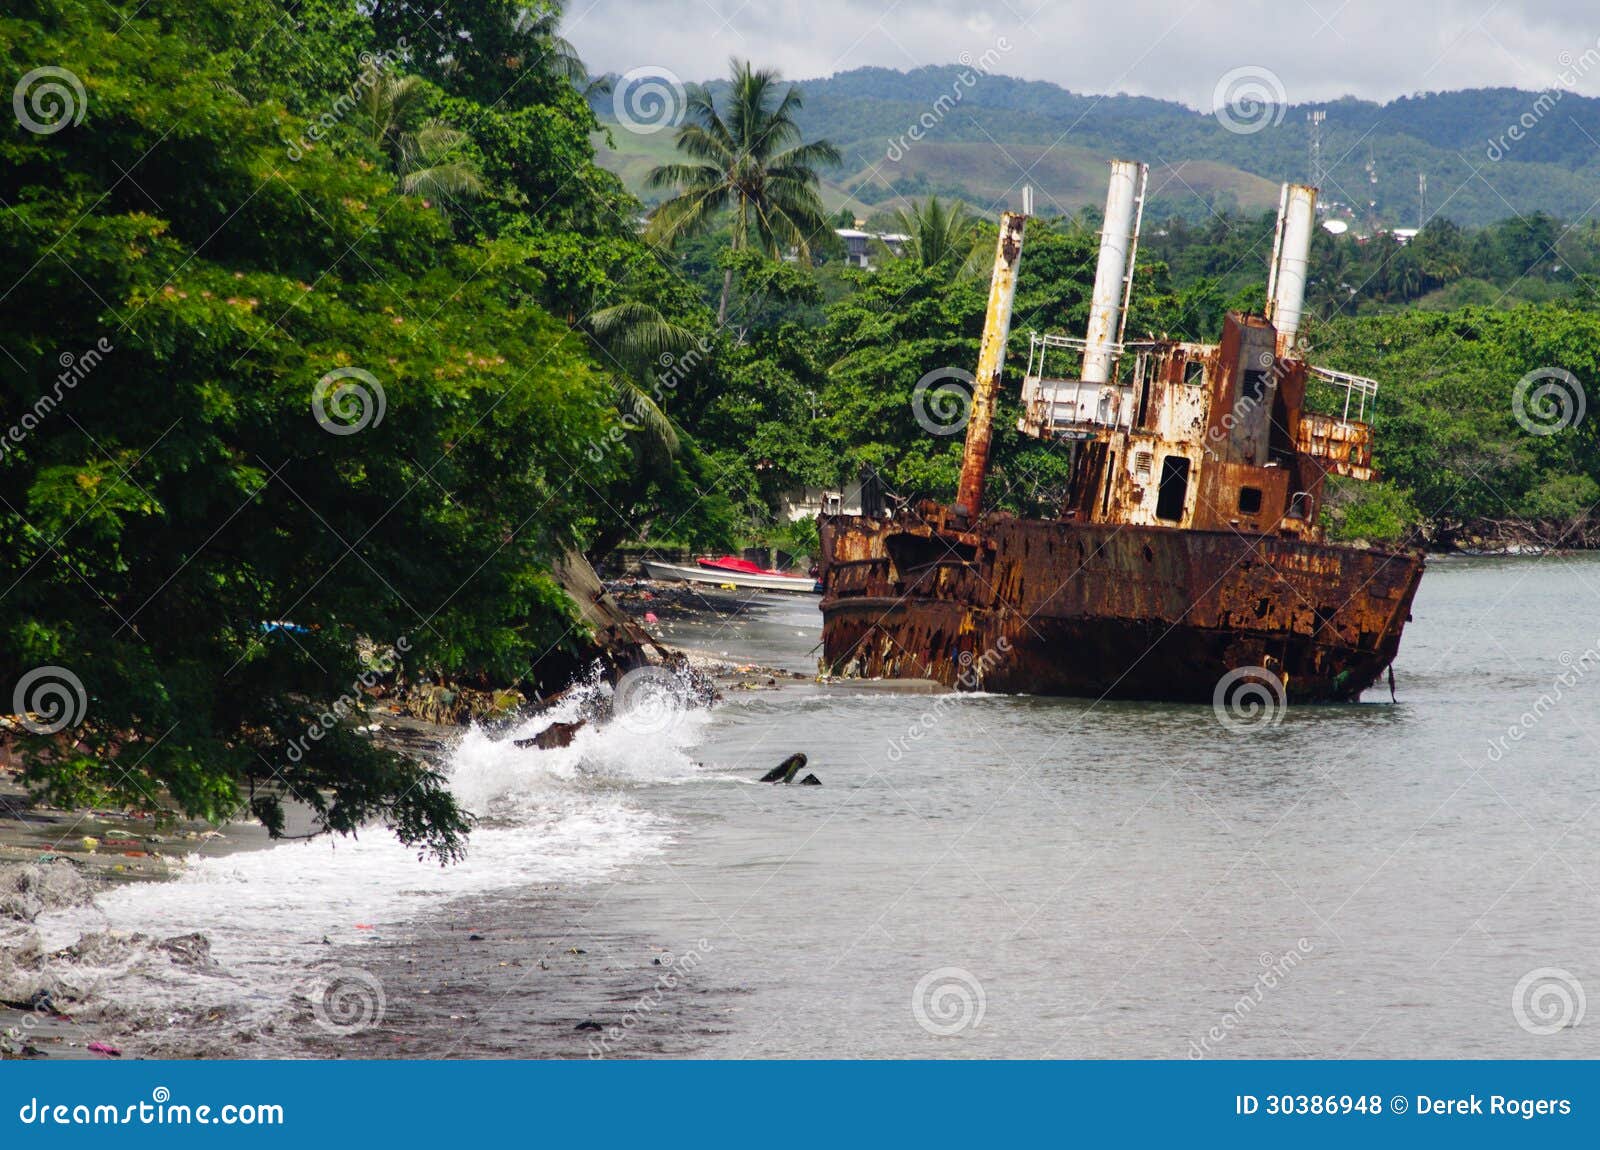 shipwreck - solomon islands